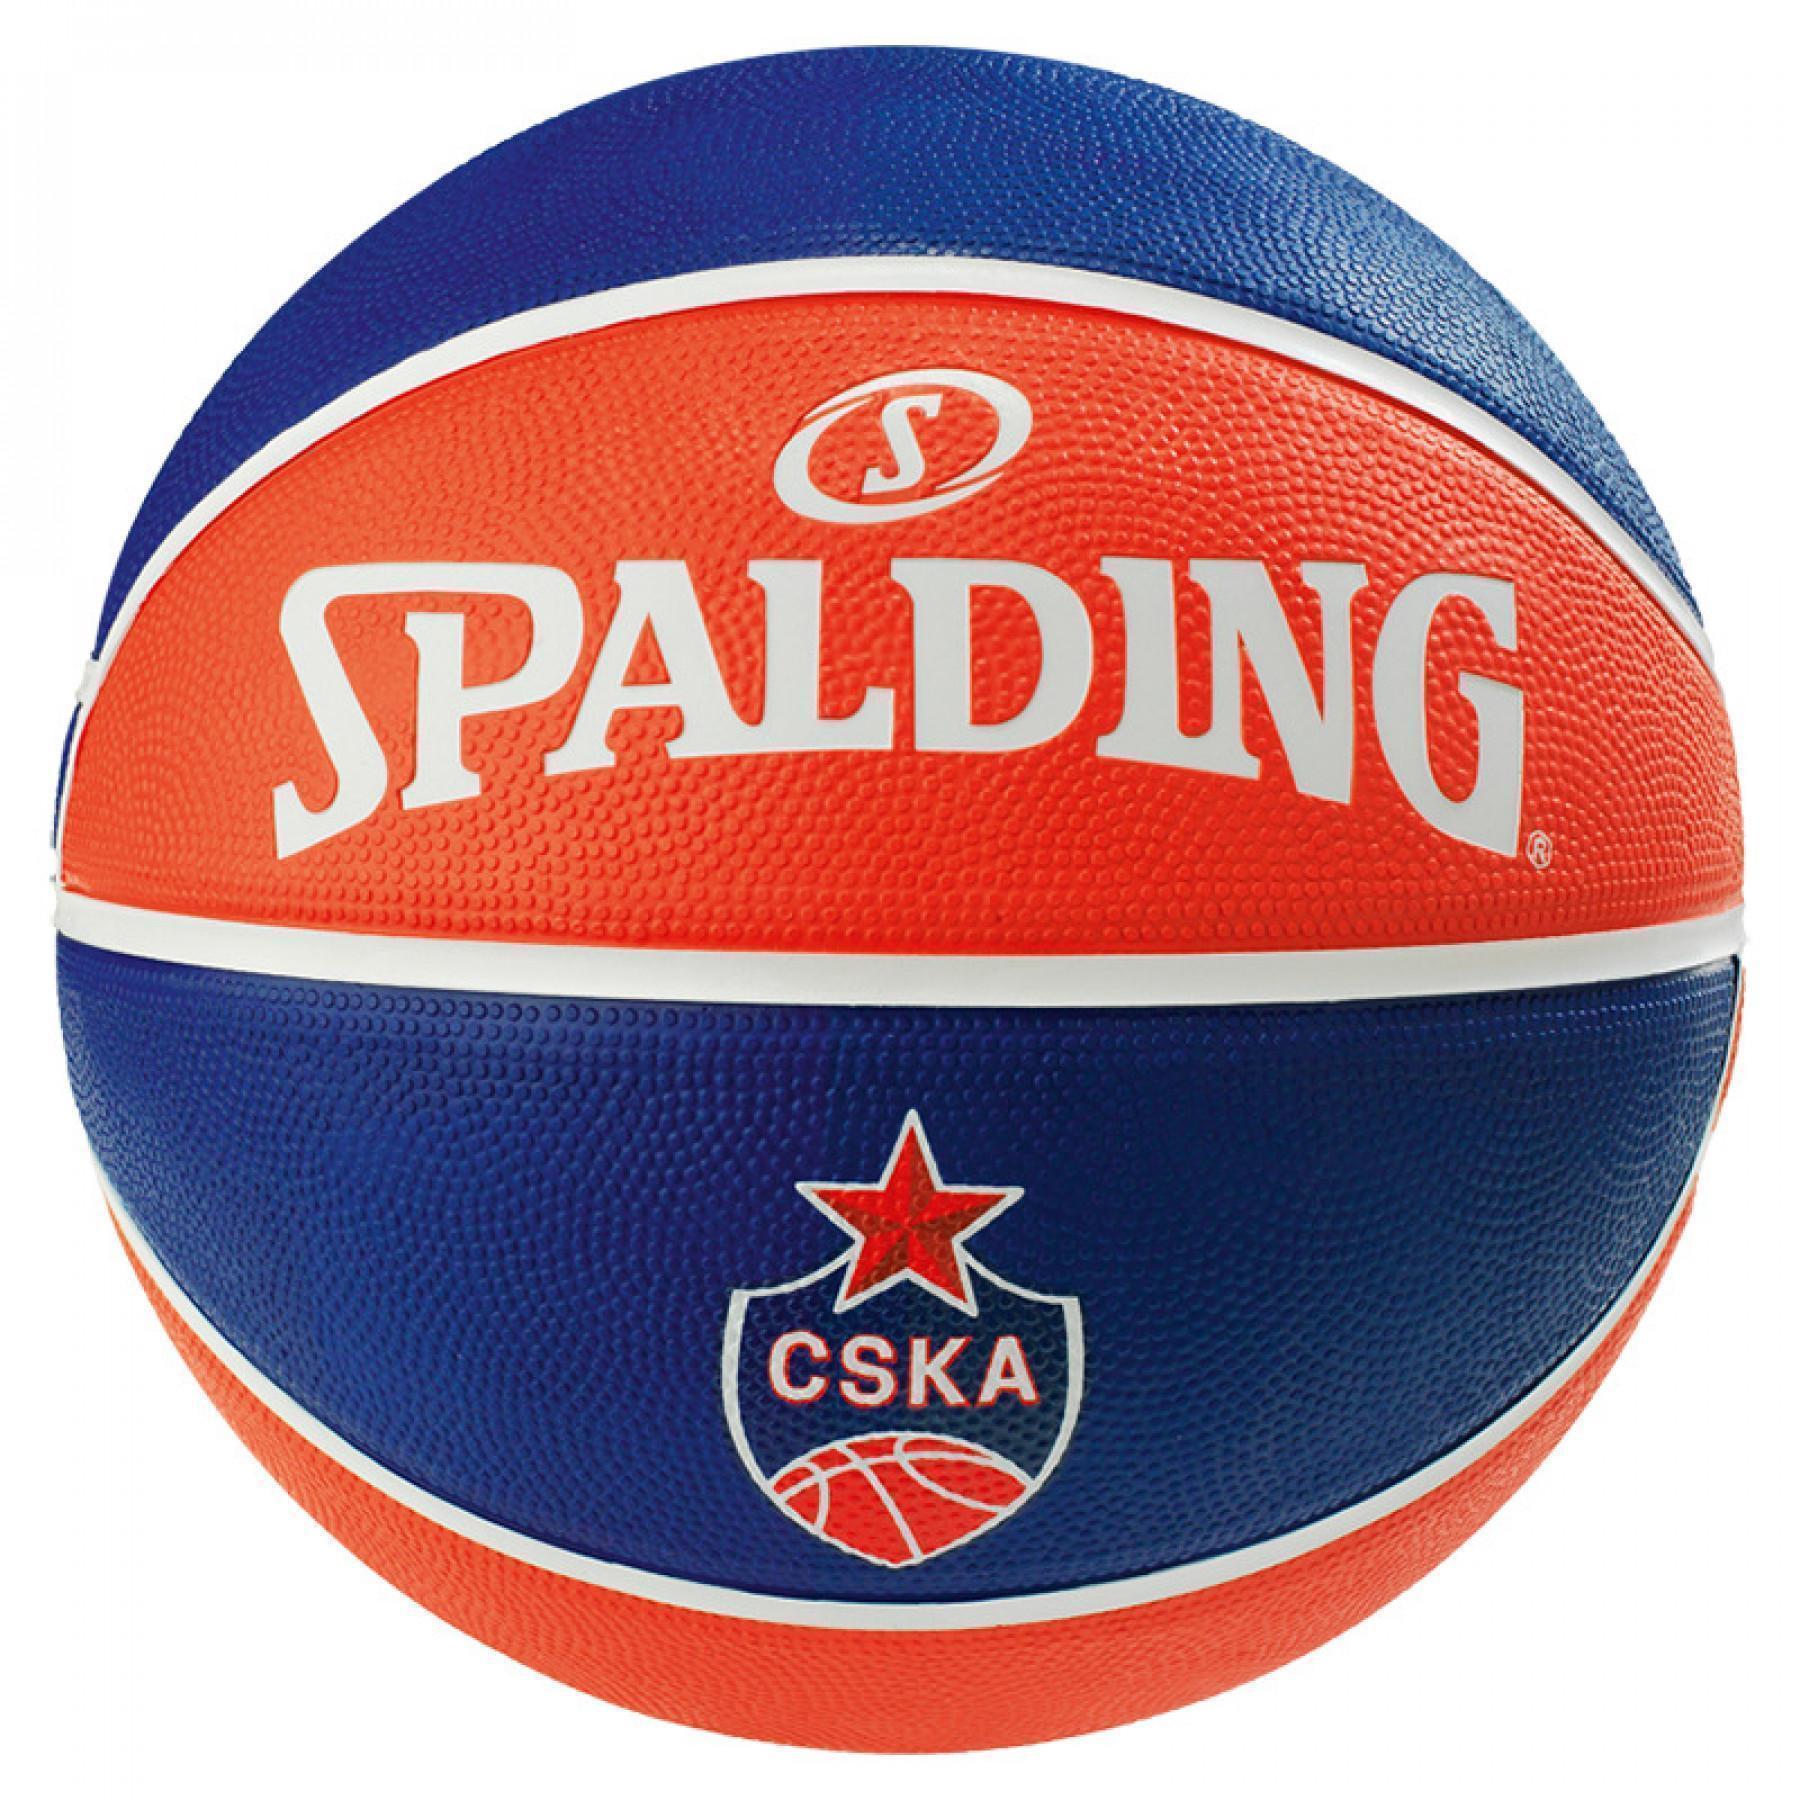 Ballon Spalding EL Team Cska Moscow (83-779z)